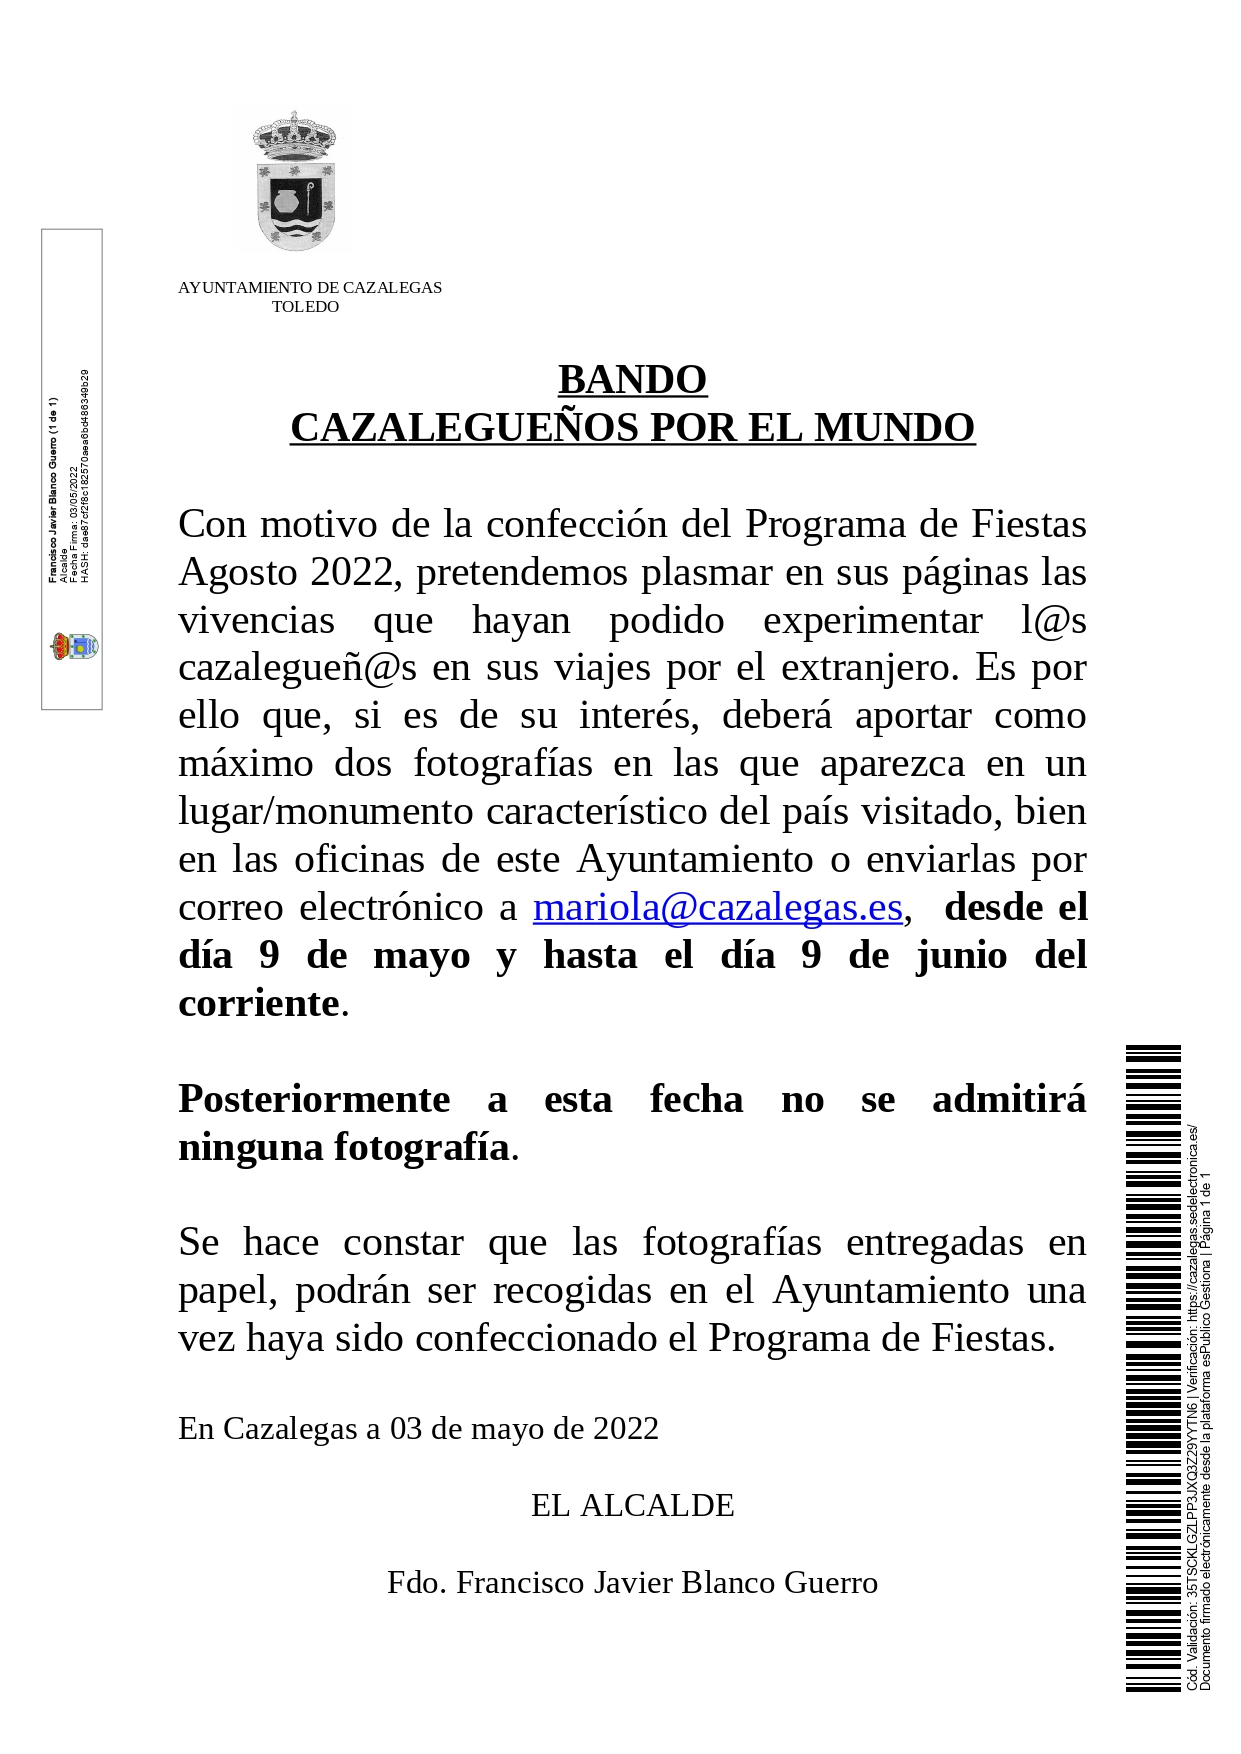 20220503 Comunicación BANDO CAZALEGUEÑOS POR EL MUNDO page 0001 1